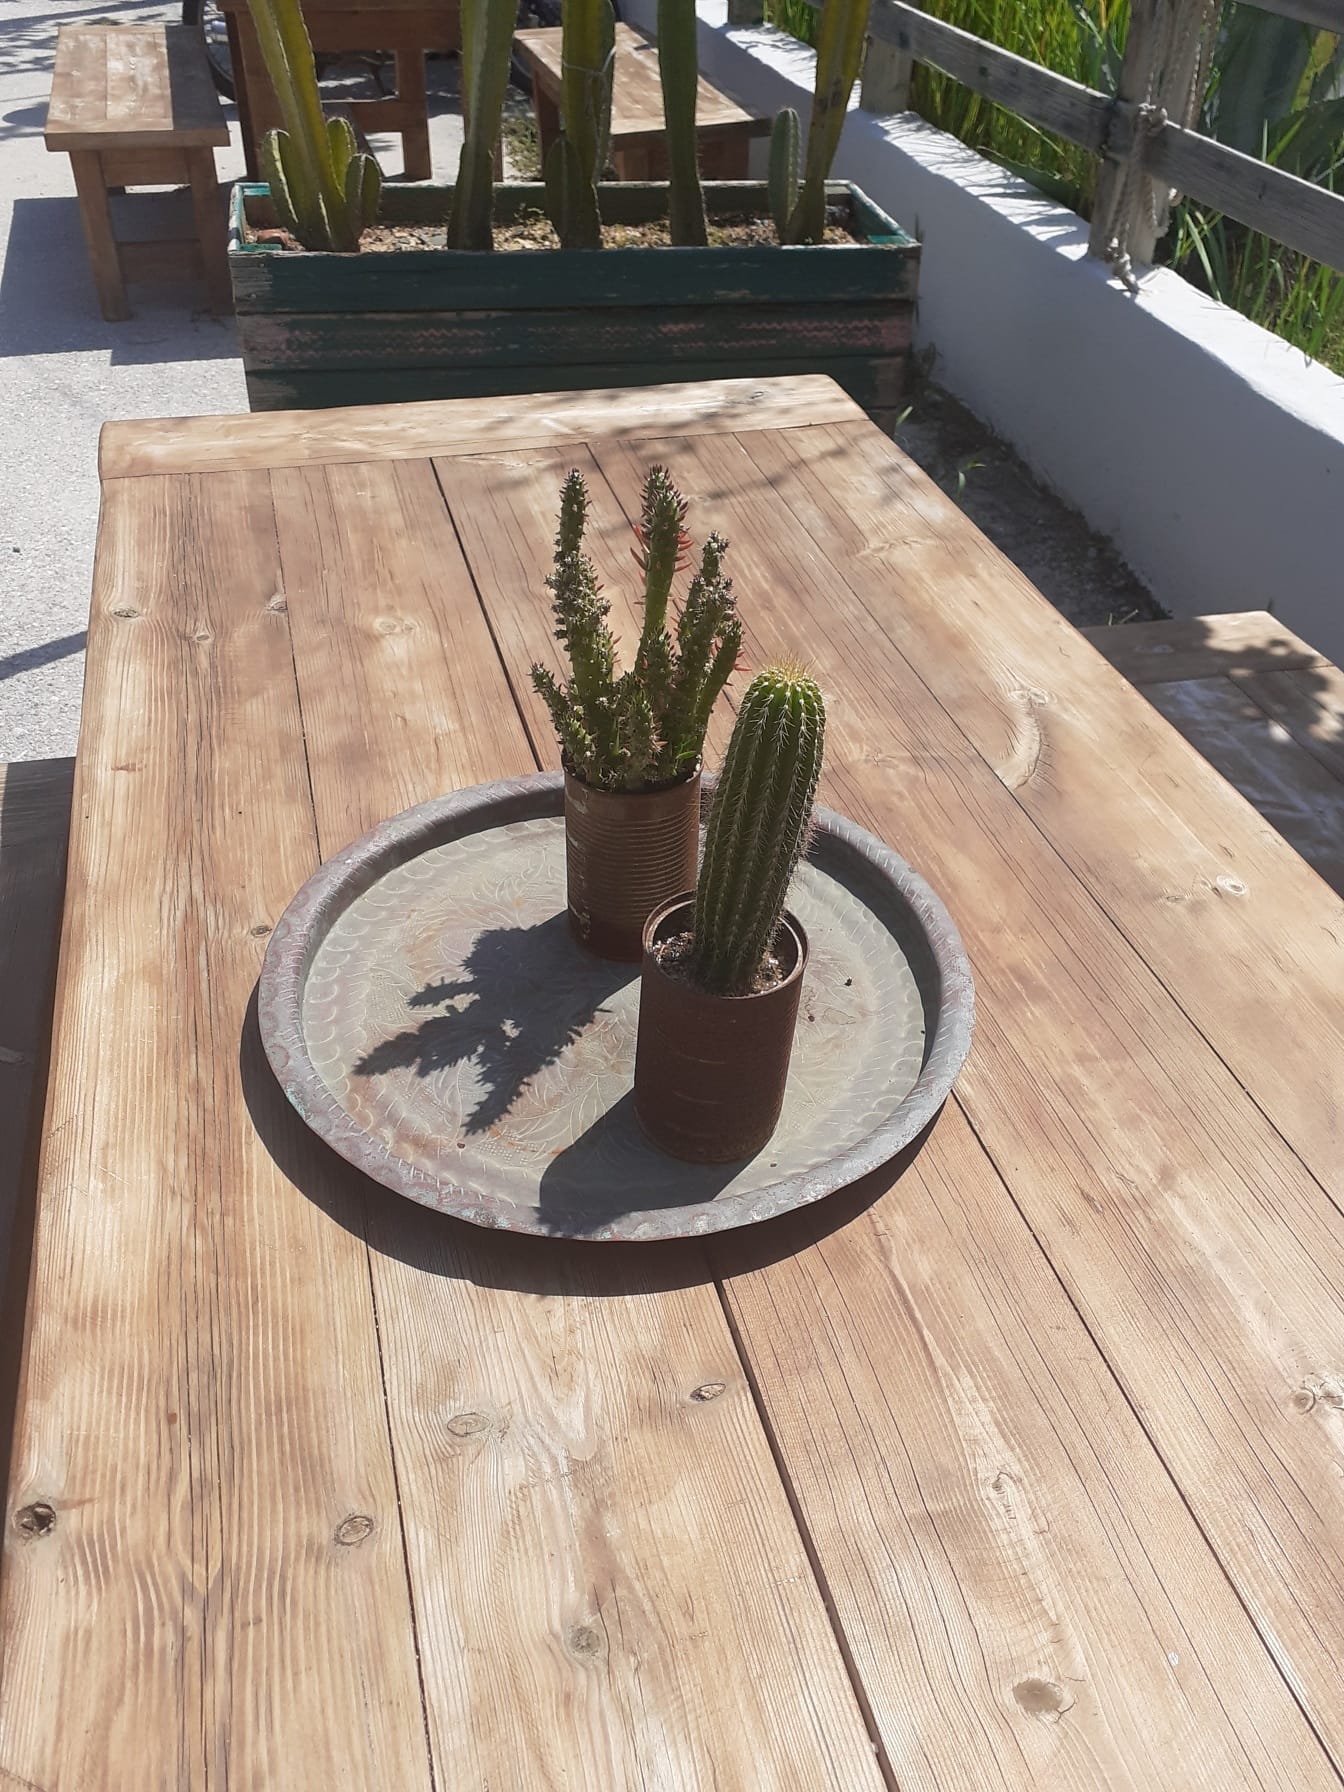 Kaktuskasvit puisella pöydällä ruostepeltipurkissa kukkaruukku